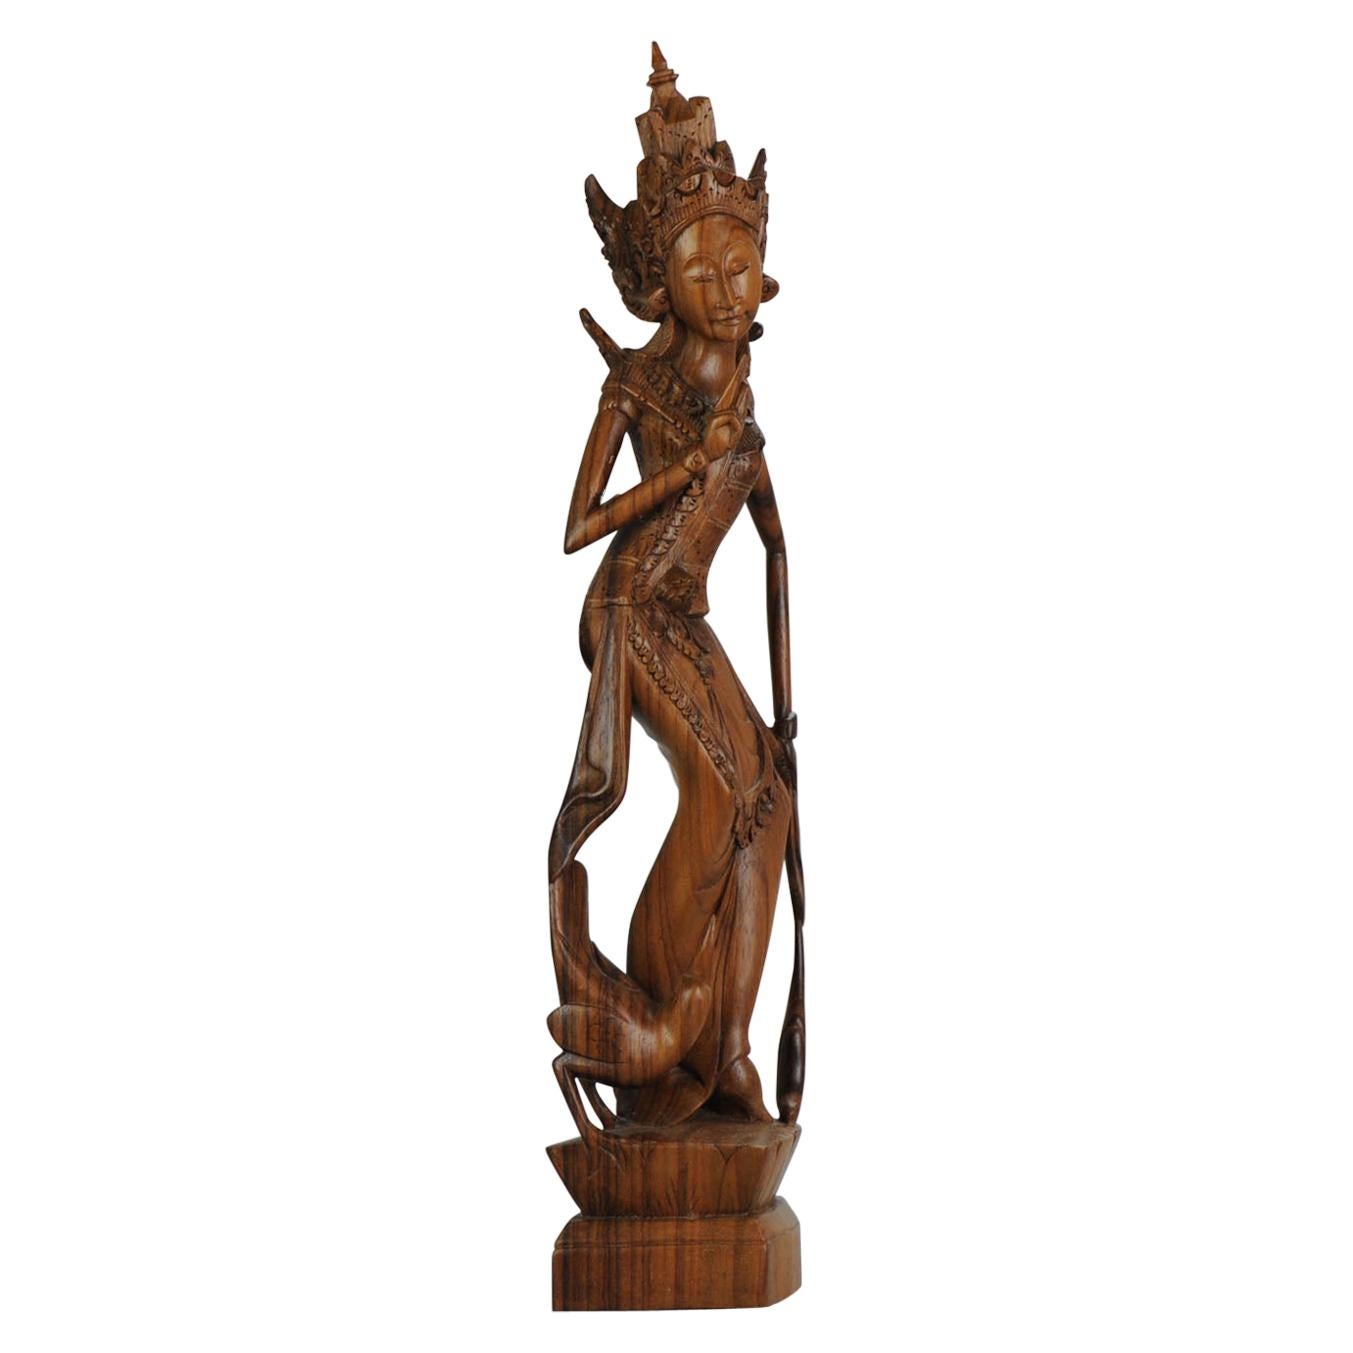 Statue de femme sculptée en bois balinaise Art Déco du milieu du 20e siècle - Bali